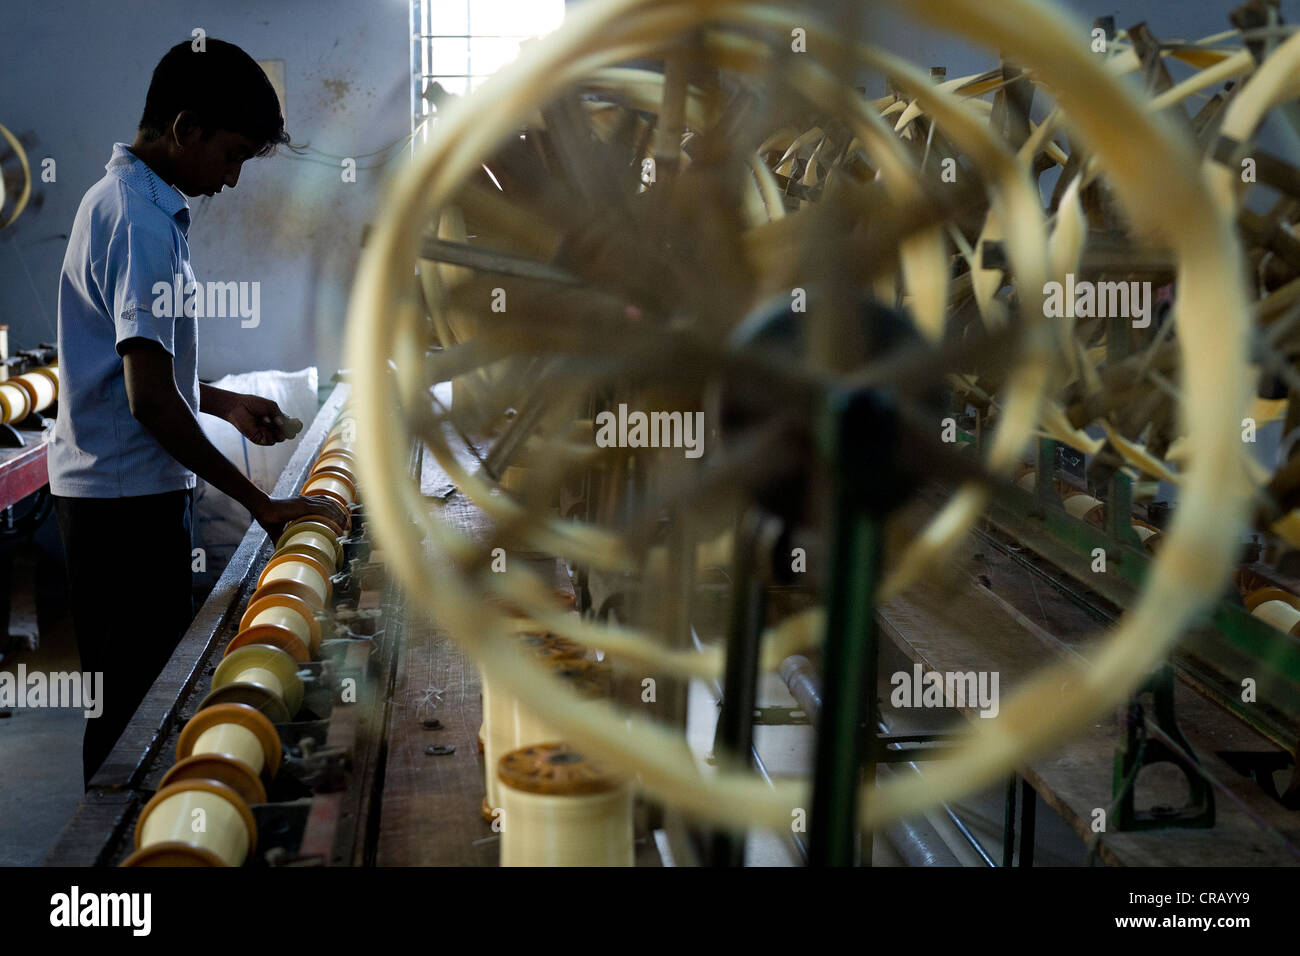 Kind Arbeiter in ein Moskitonetz Fabrik, Karur, Tamil Nadu, Indien, Asien Stockfoto